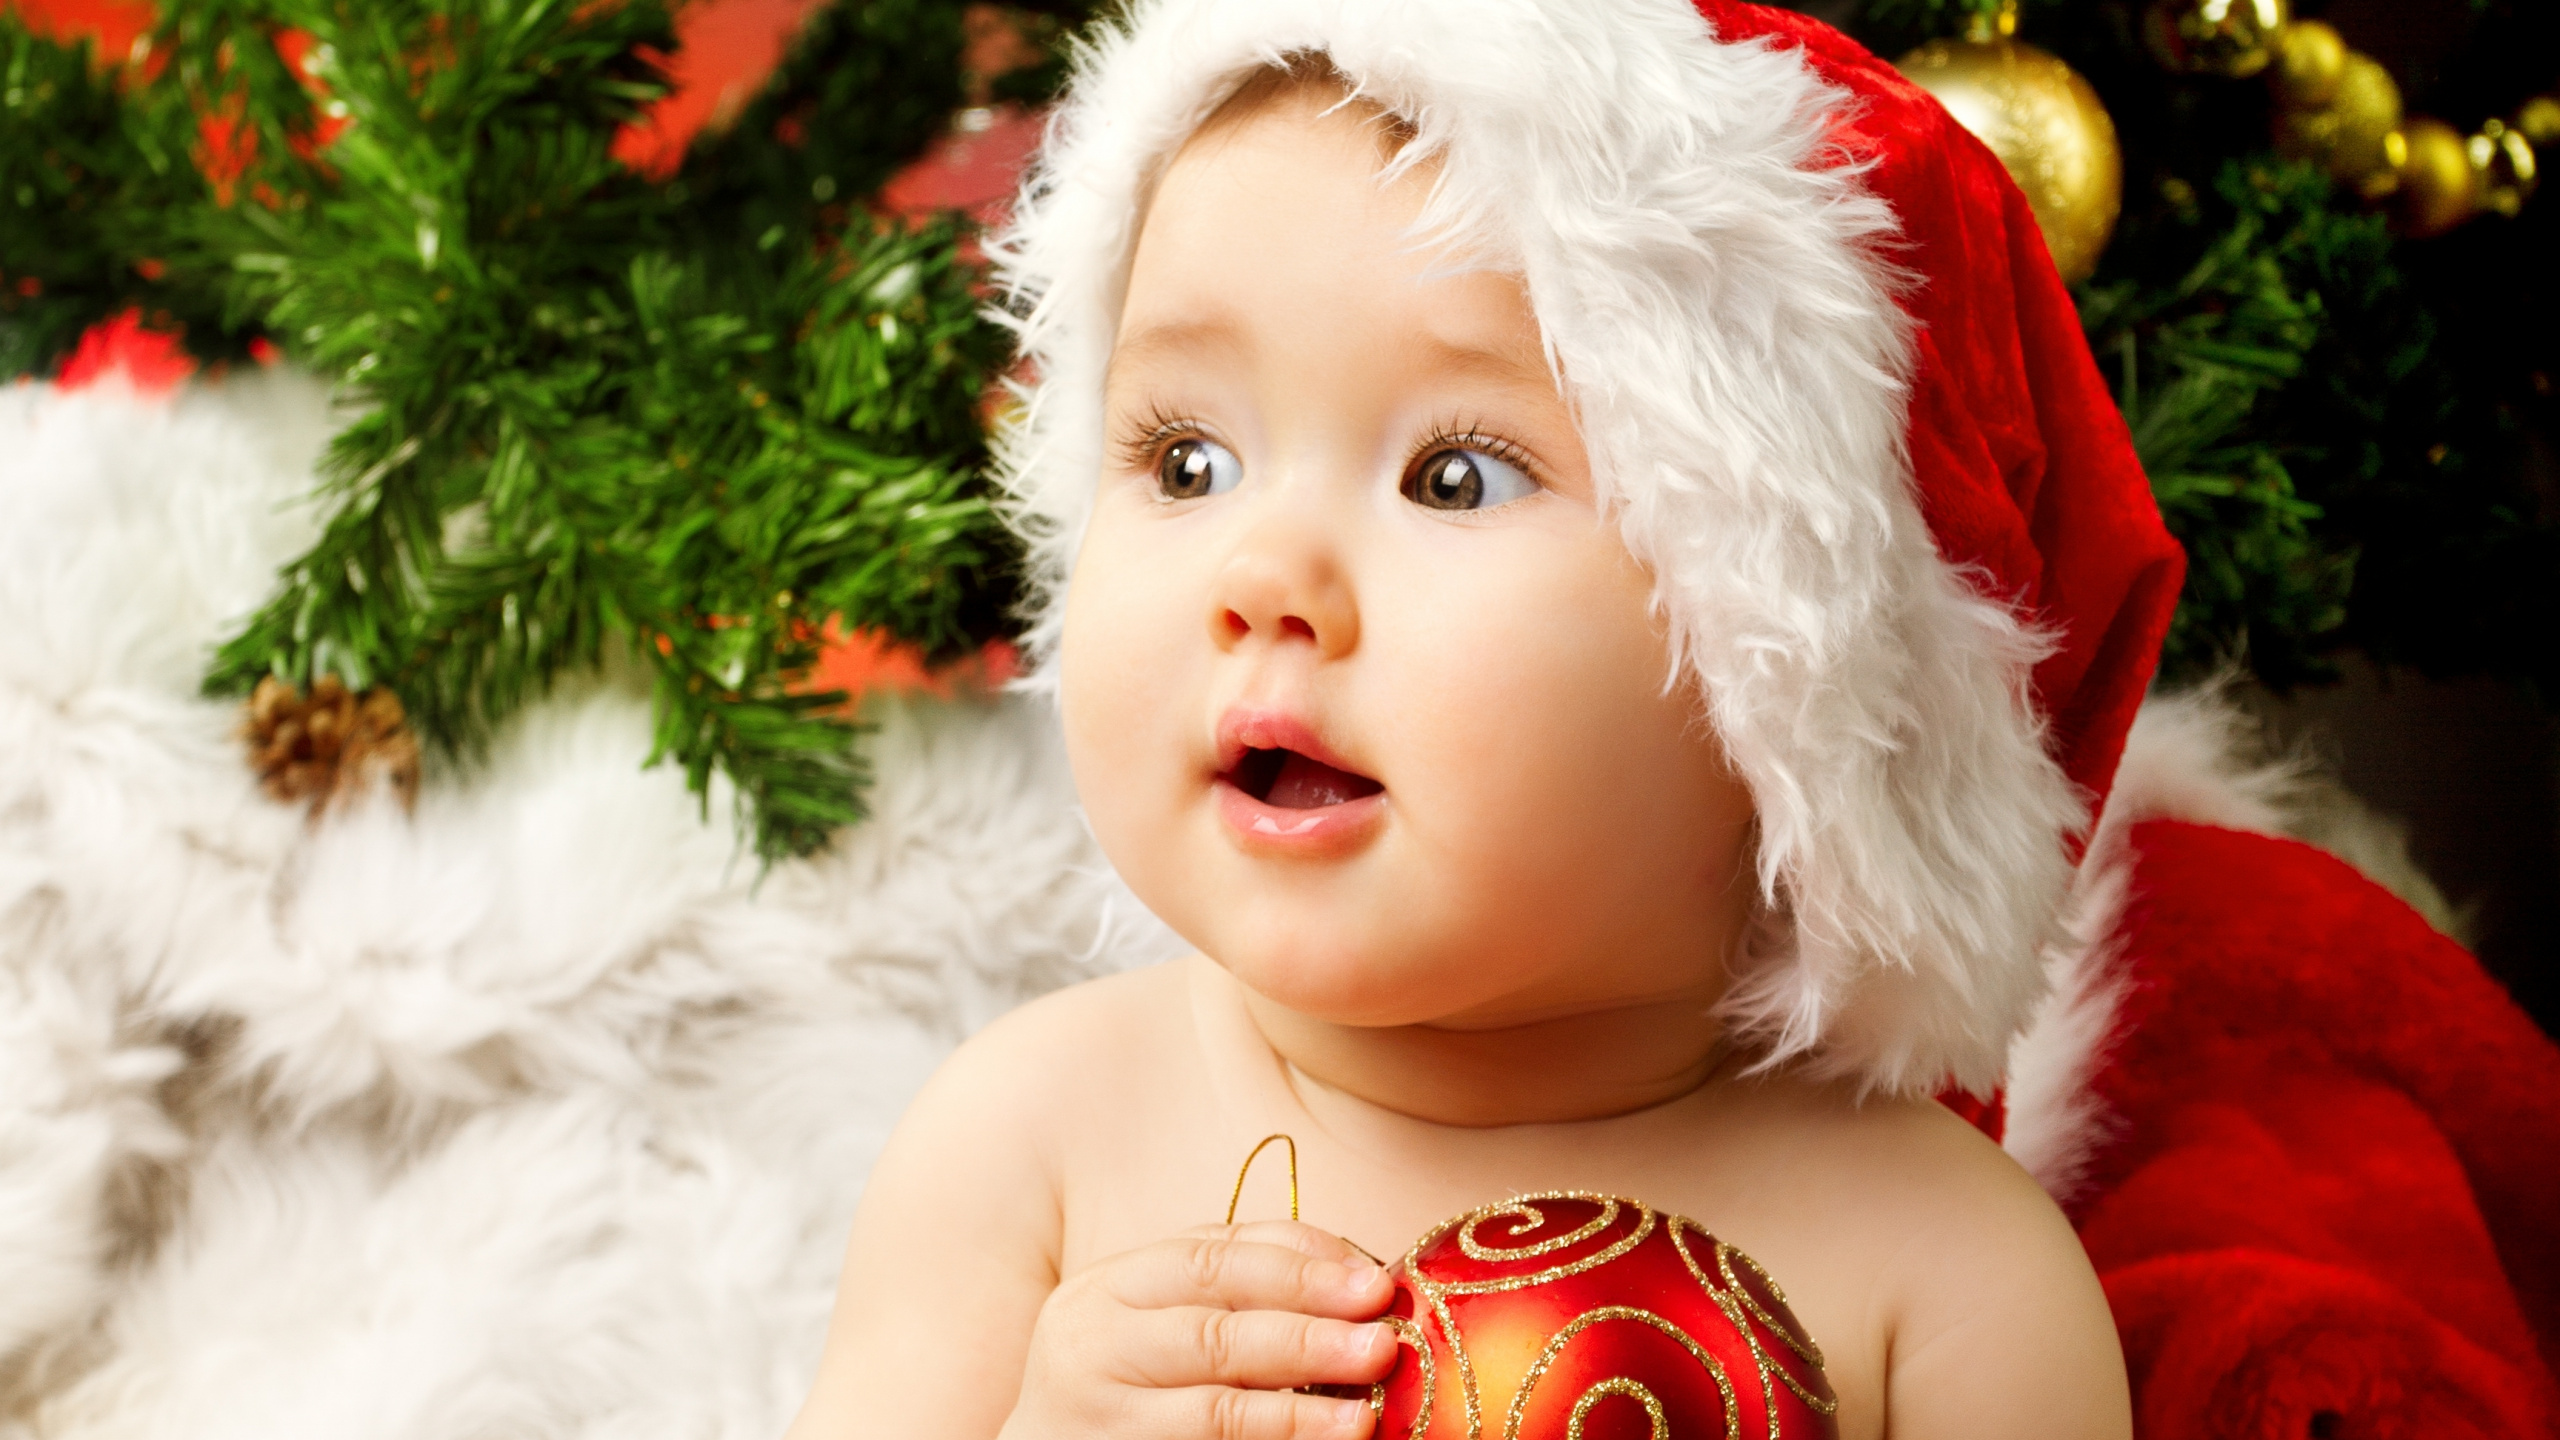 Le Jour De Noël, Nourrisson, la Gentillesse, Enfant, Ornement de Noël. Wallpaper in 2560x1440 Resolution